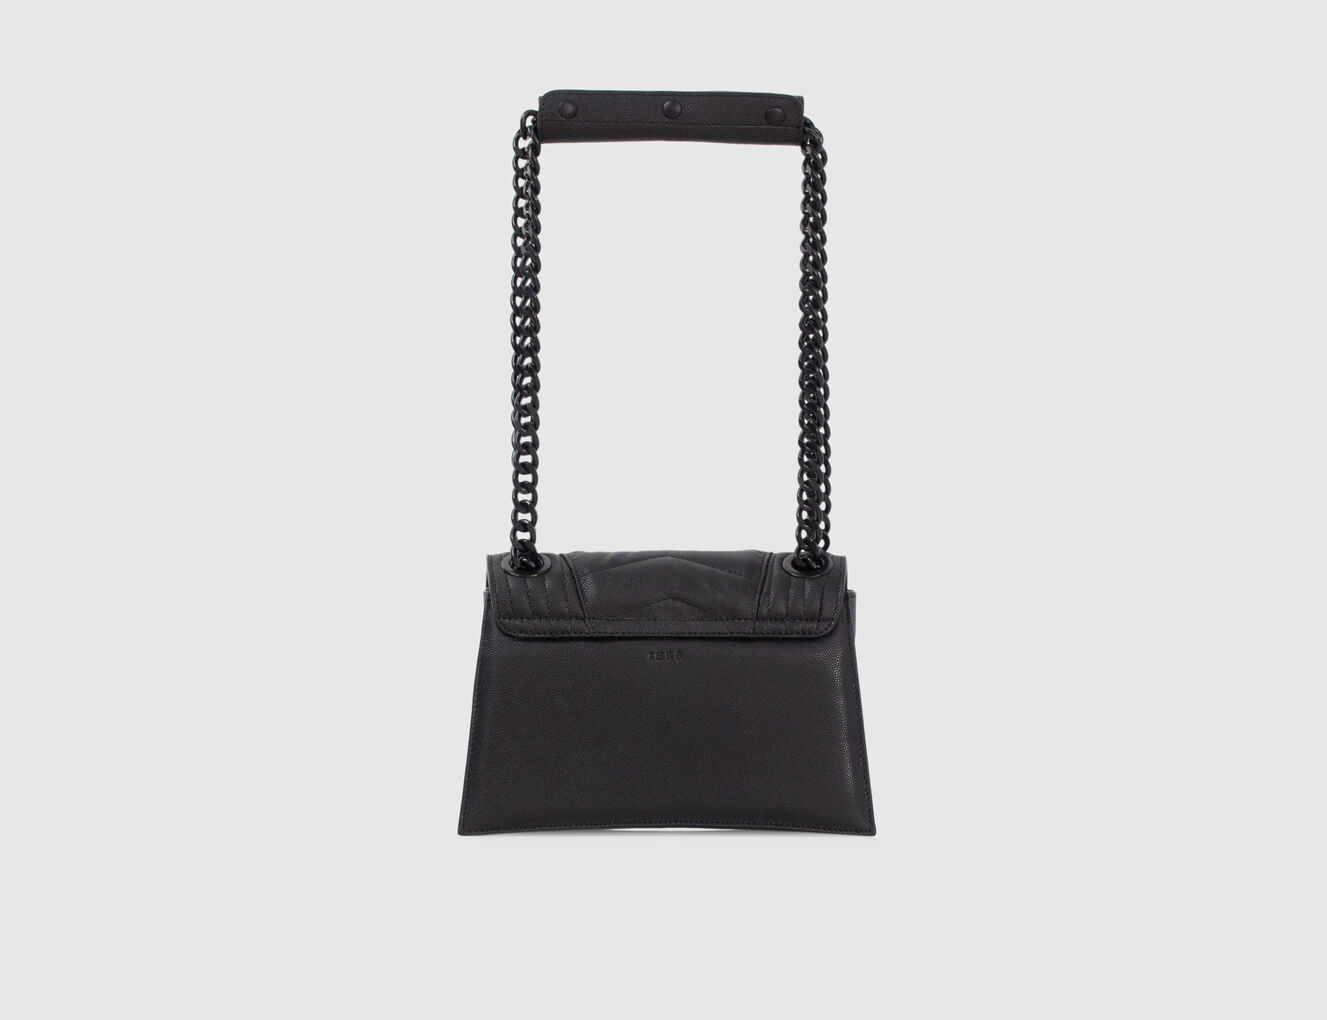 Damentasche THE 1 aus schwarzem Leder Größe S - IKKS-3